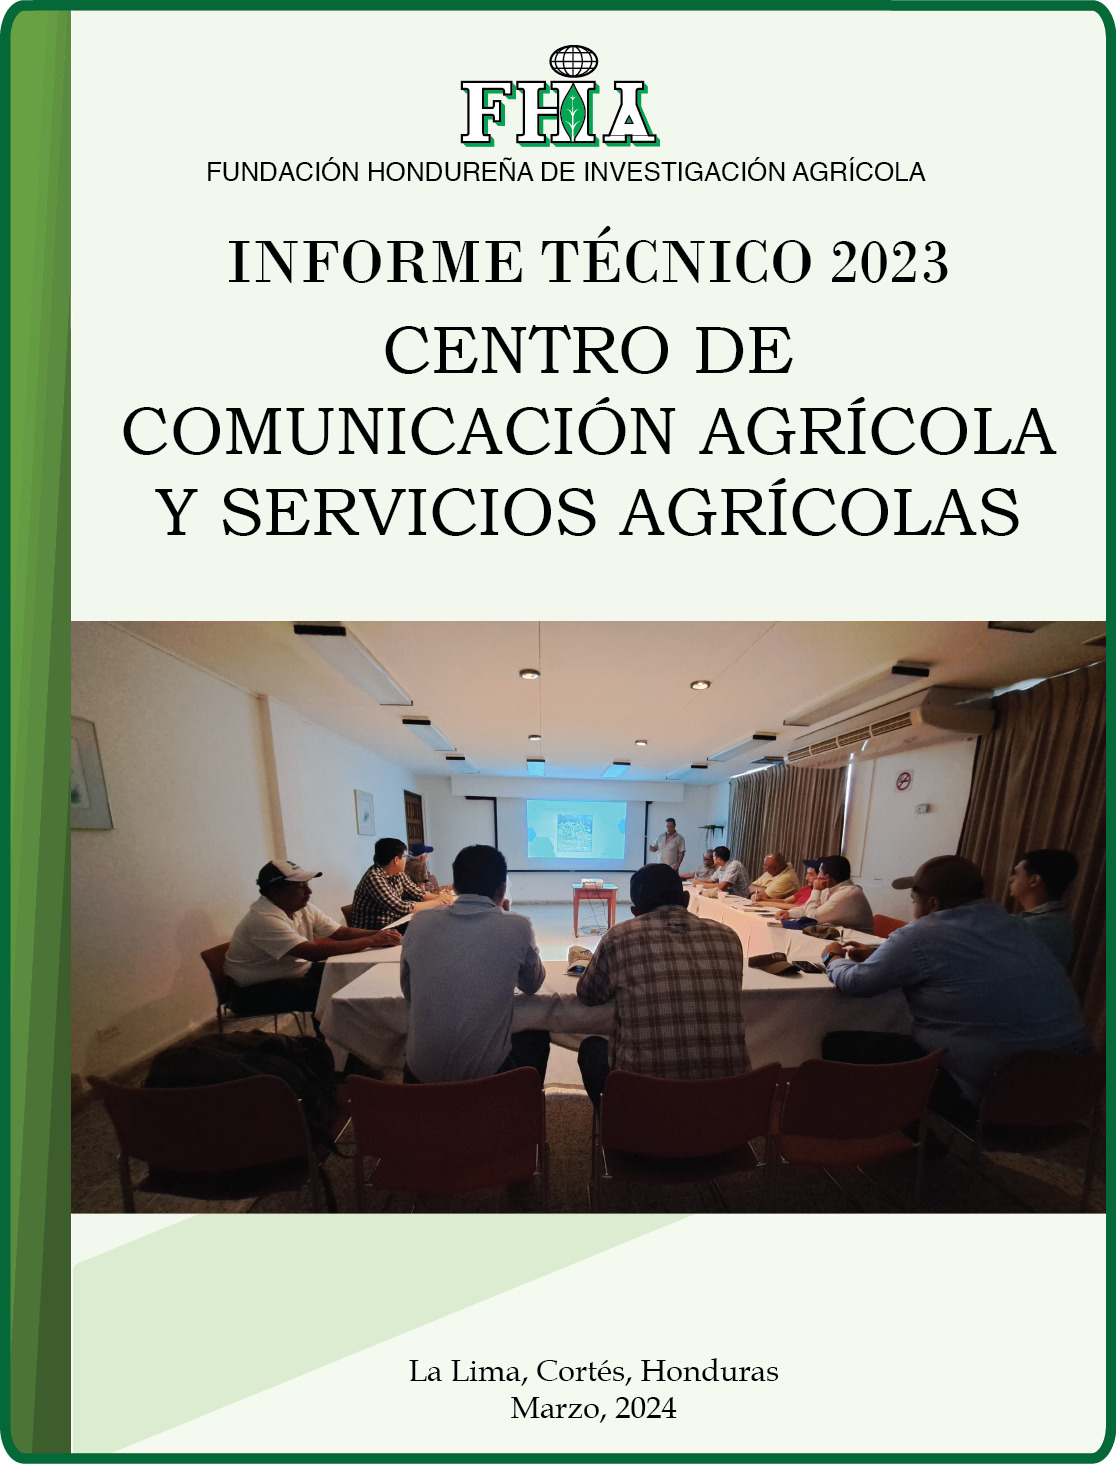 Centro de Comunicación Agrícola y Servicios Agrícolas 2023